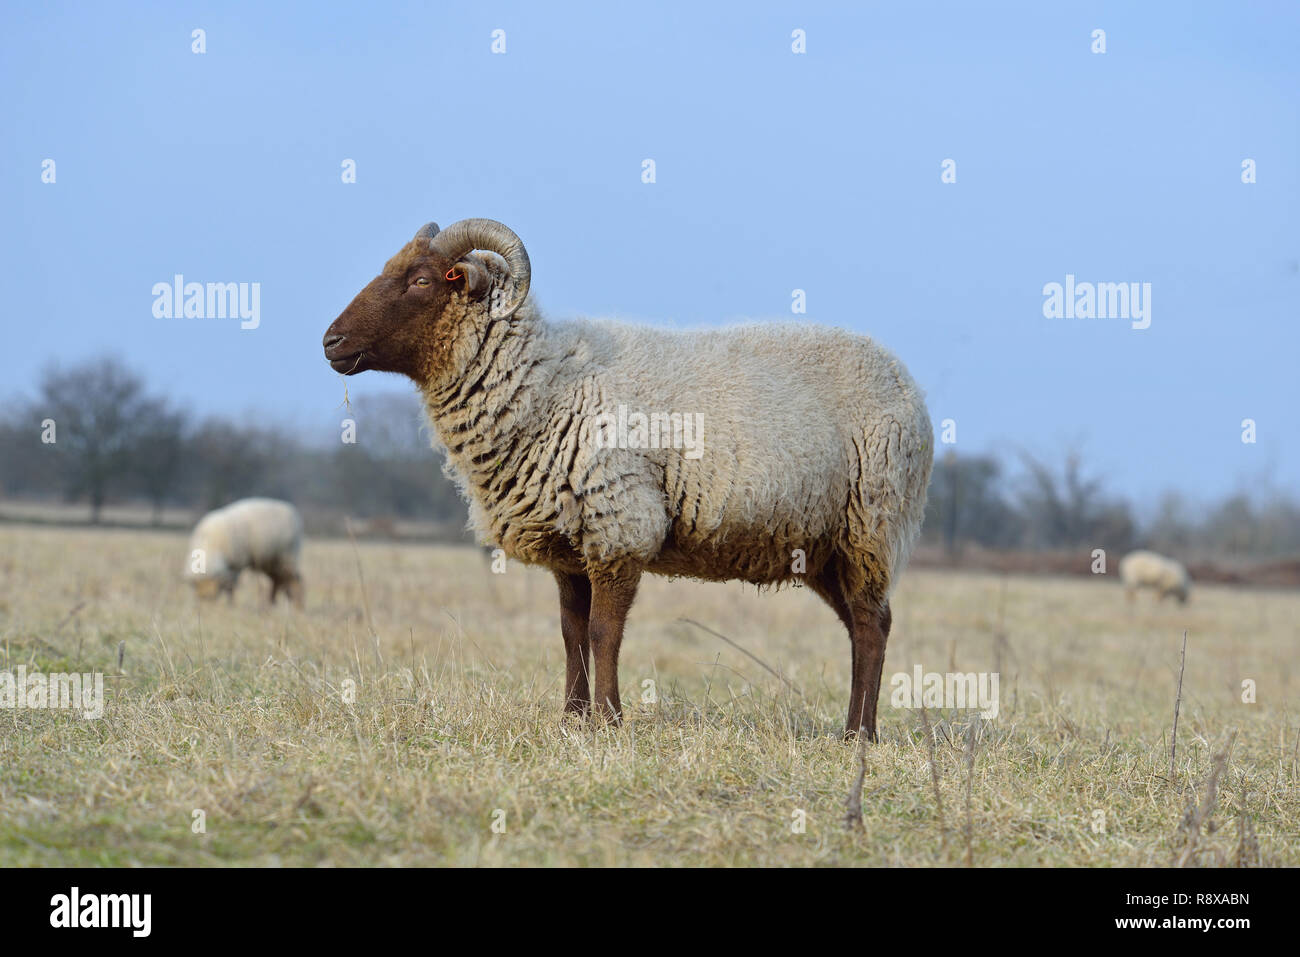 Sheep / Ram in Suffolk field Stock Photo